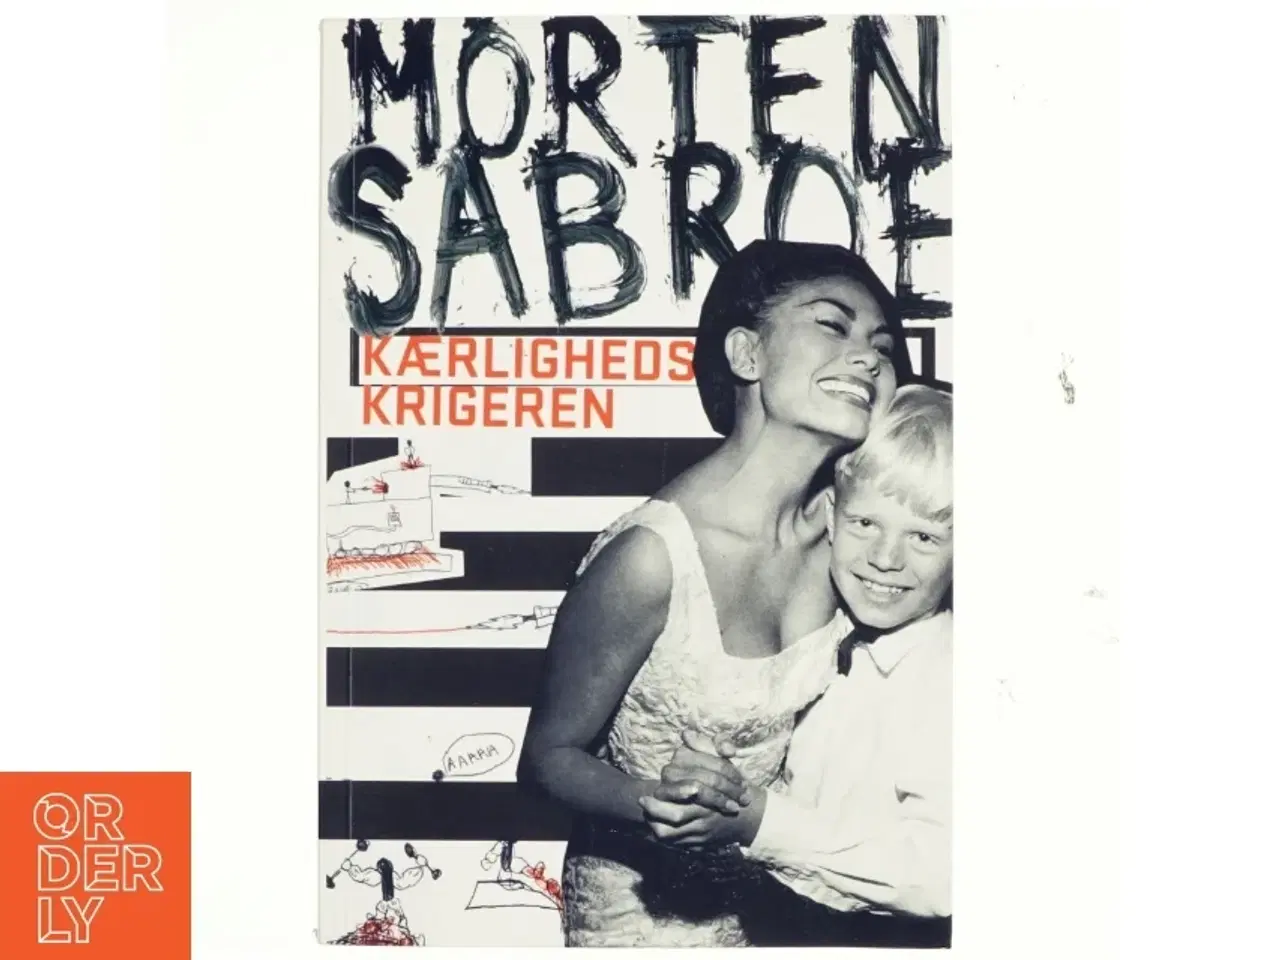 Billede 1 - Kærlighedskrigeren af Morten Sabroe (Bog)